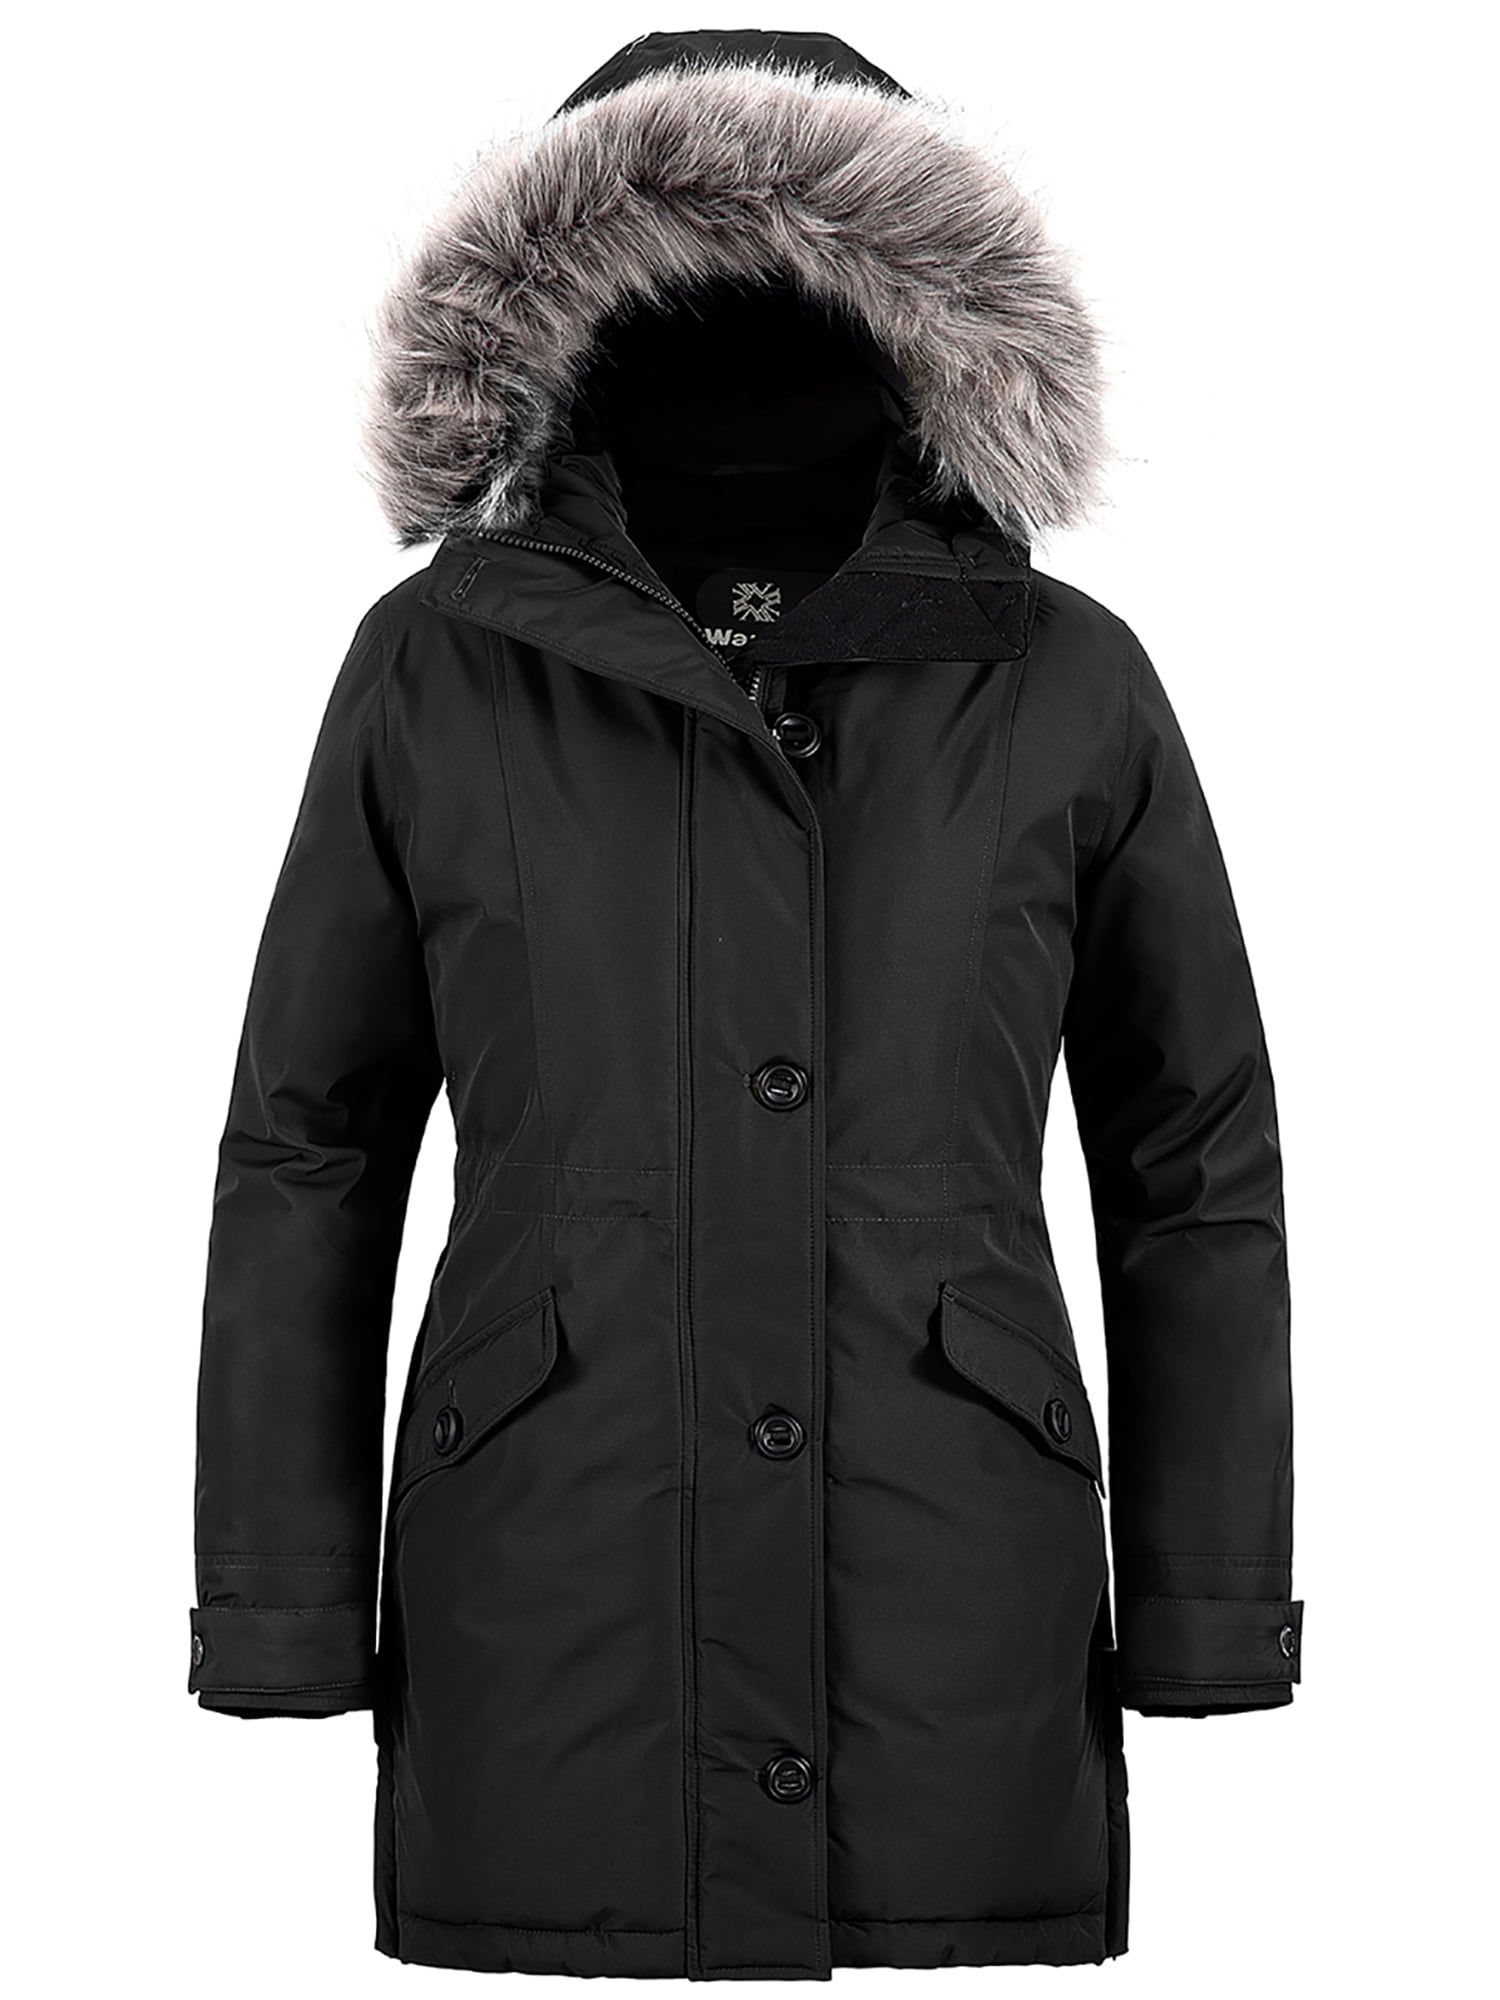 Wantdo Women's Winter Jacket Heavy Waterproof Winter Coats Hooded ...